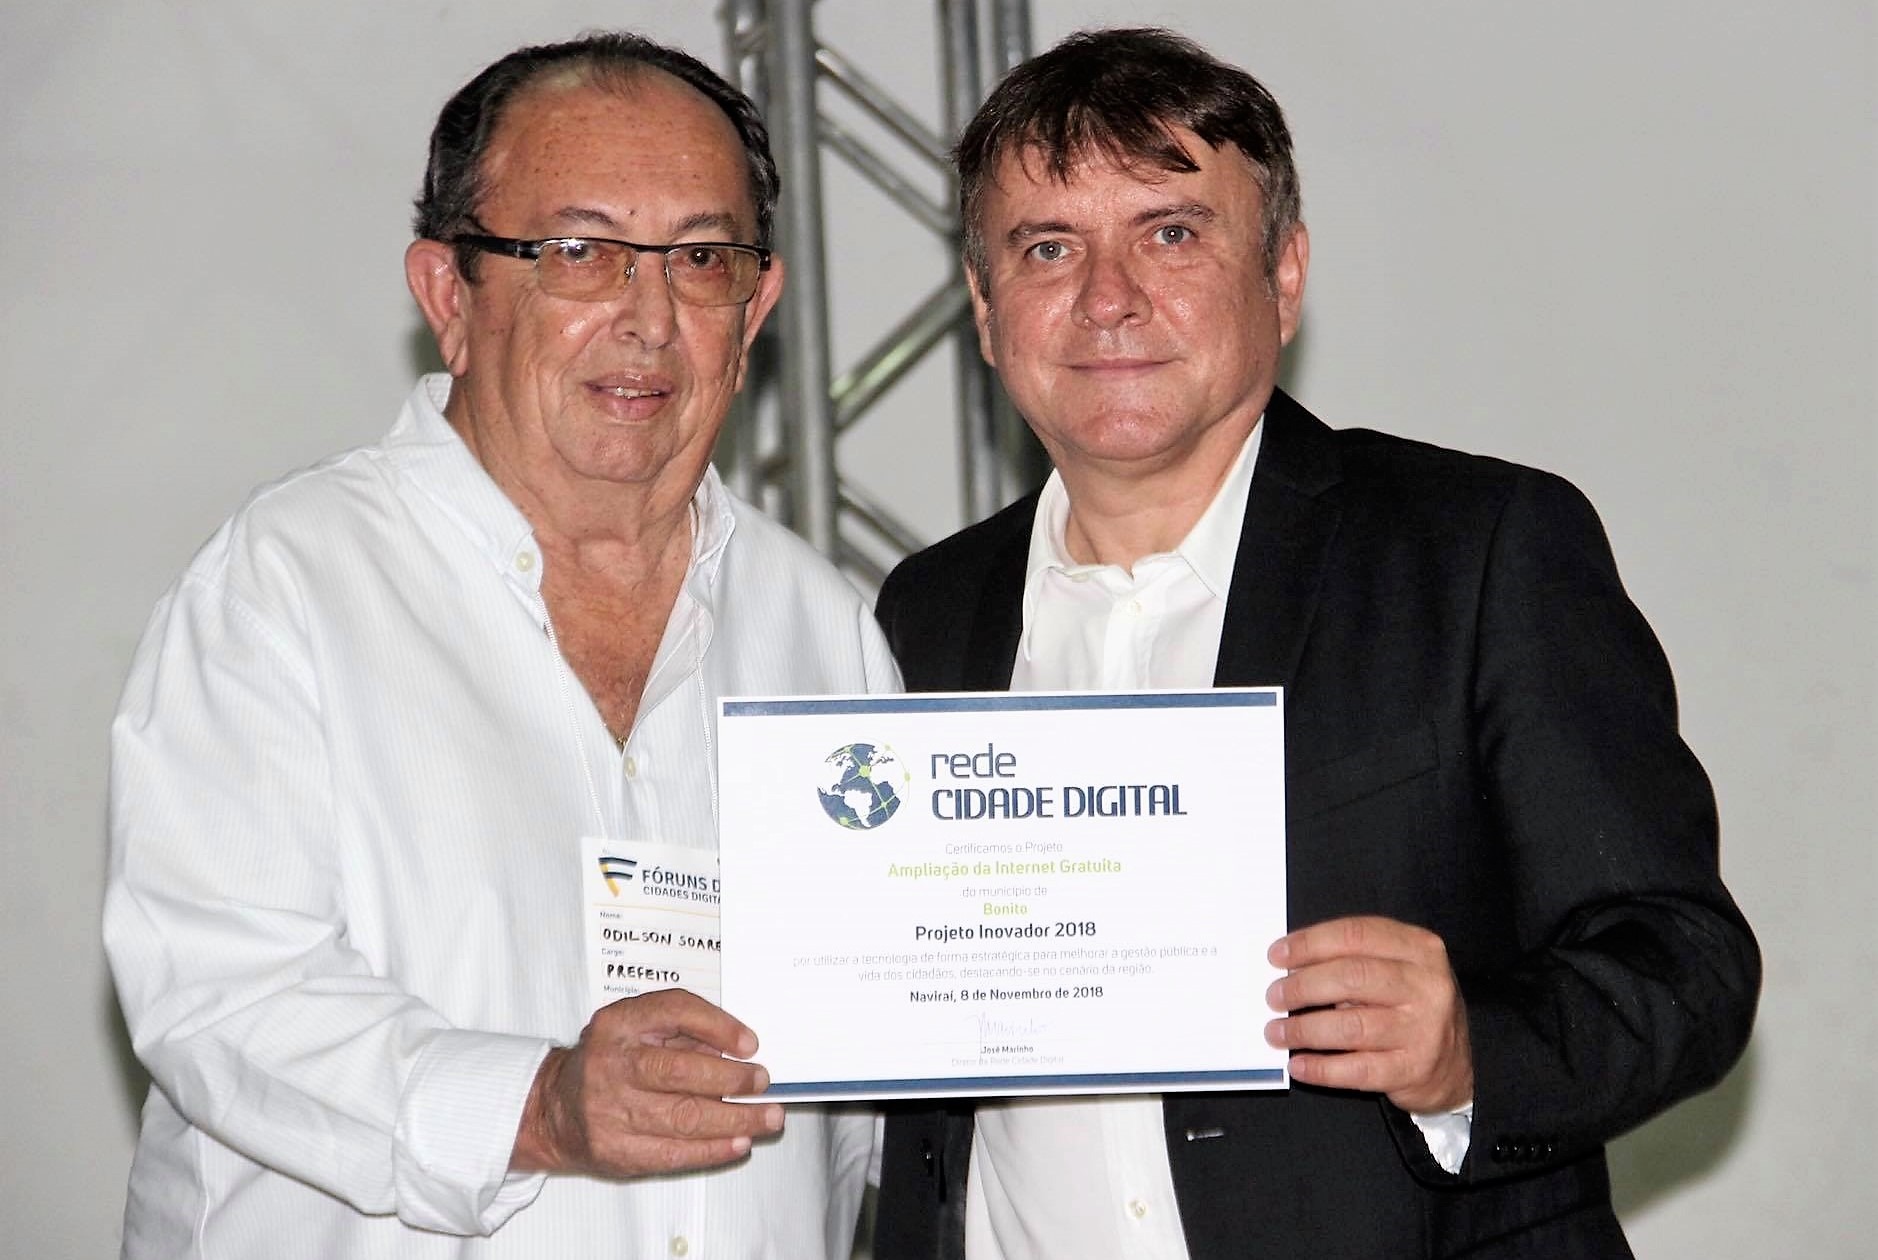 Certificado foi entregue ao prefeito pelo diretor da Rede Cidade Digital, jornalista e professor José Marinho. Foto: PMB